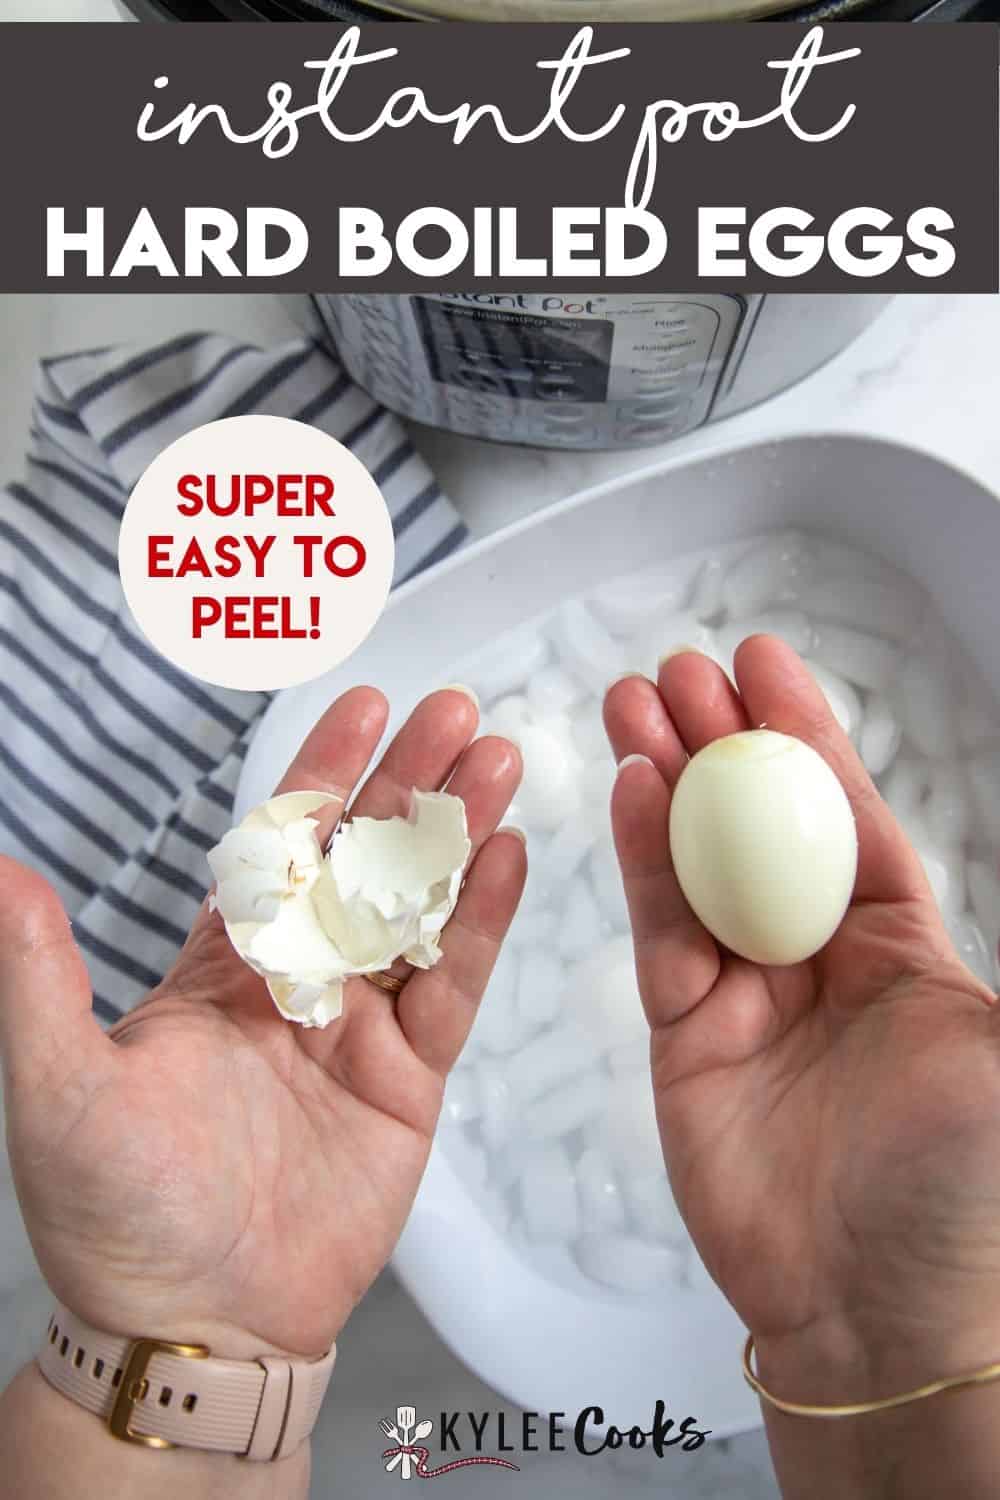 https://www.kyleecooks.com/wp-content/uploads/2021/12/Instant-Pot-Boiled-Eggs-PIN-1000x1500-2.jpg